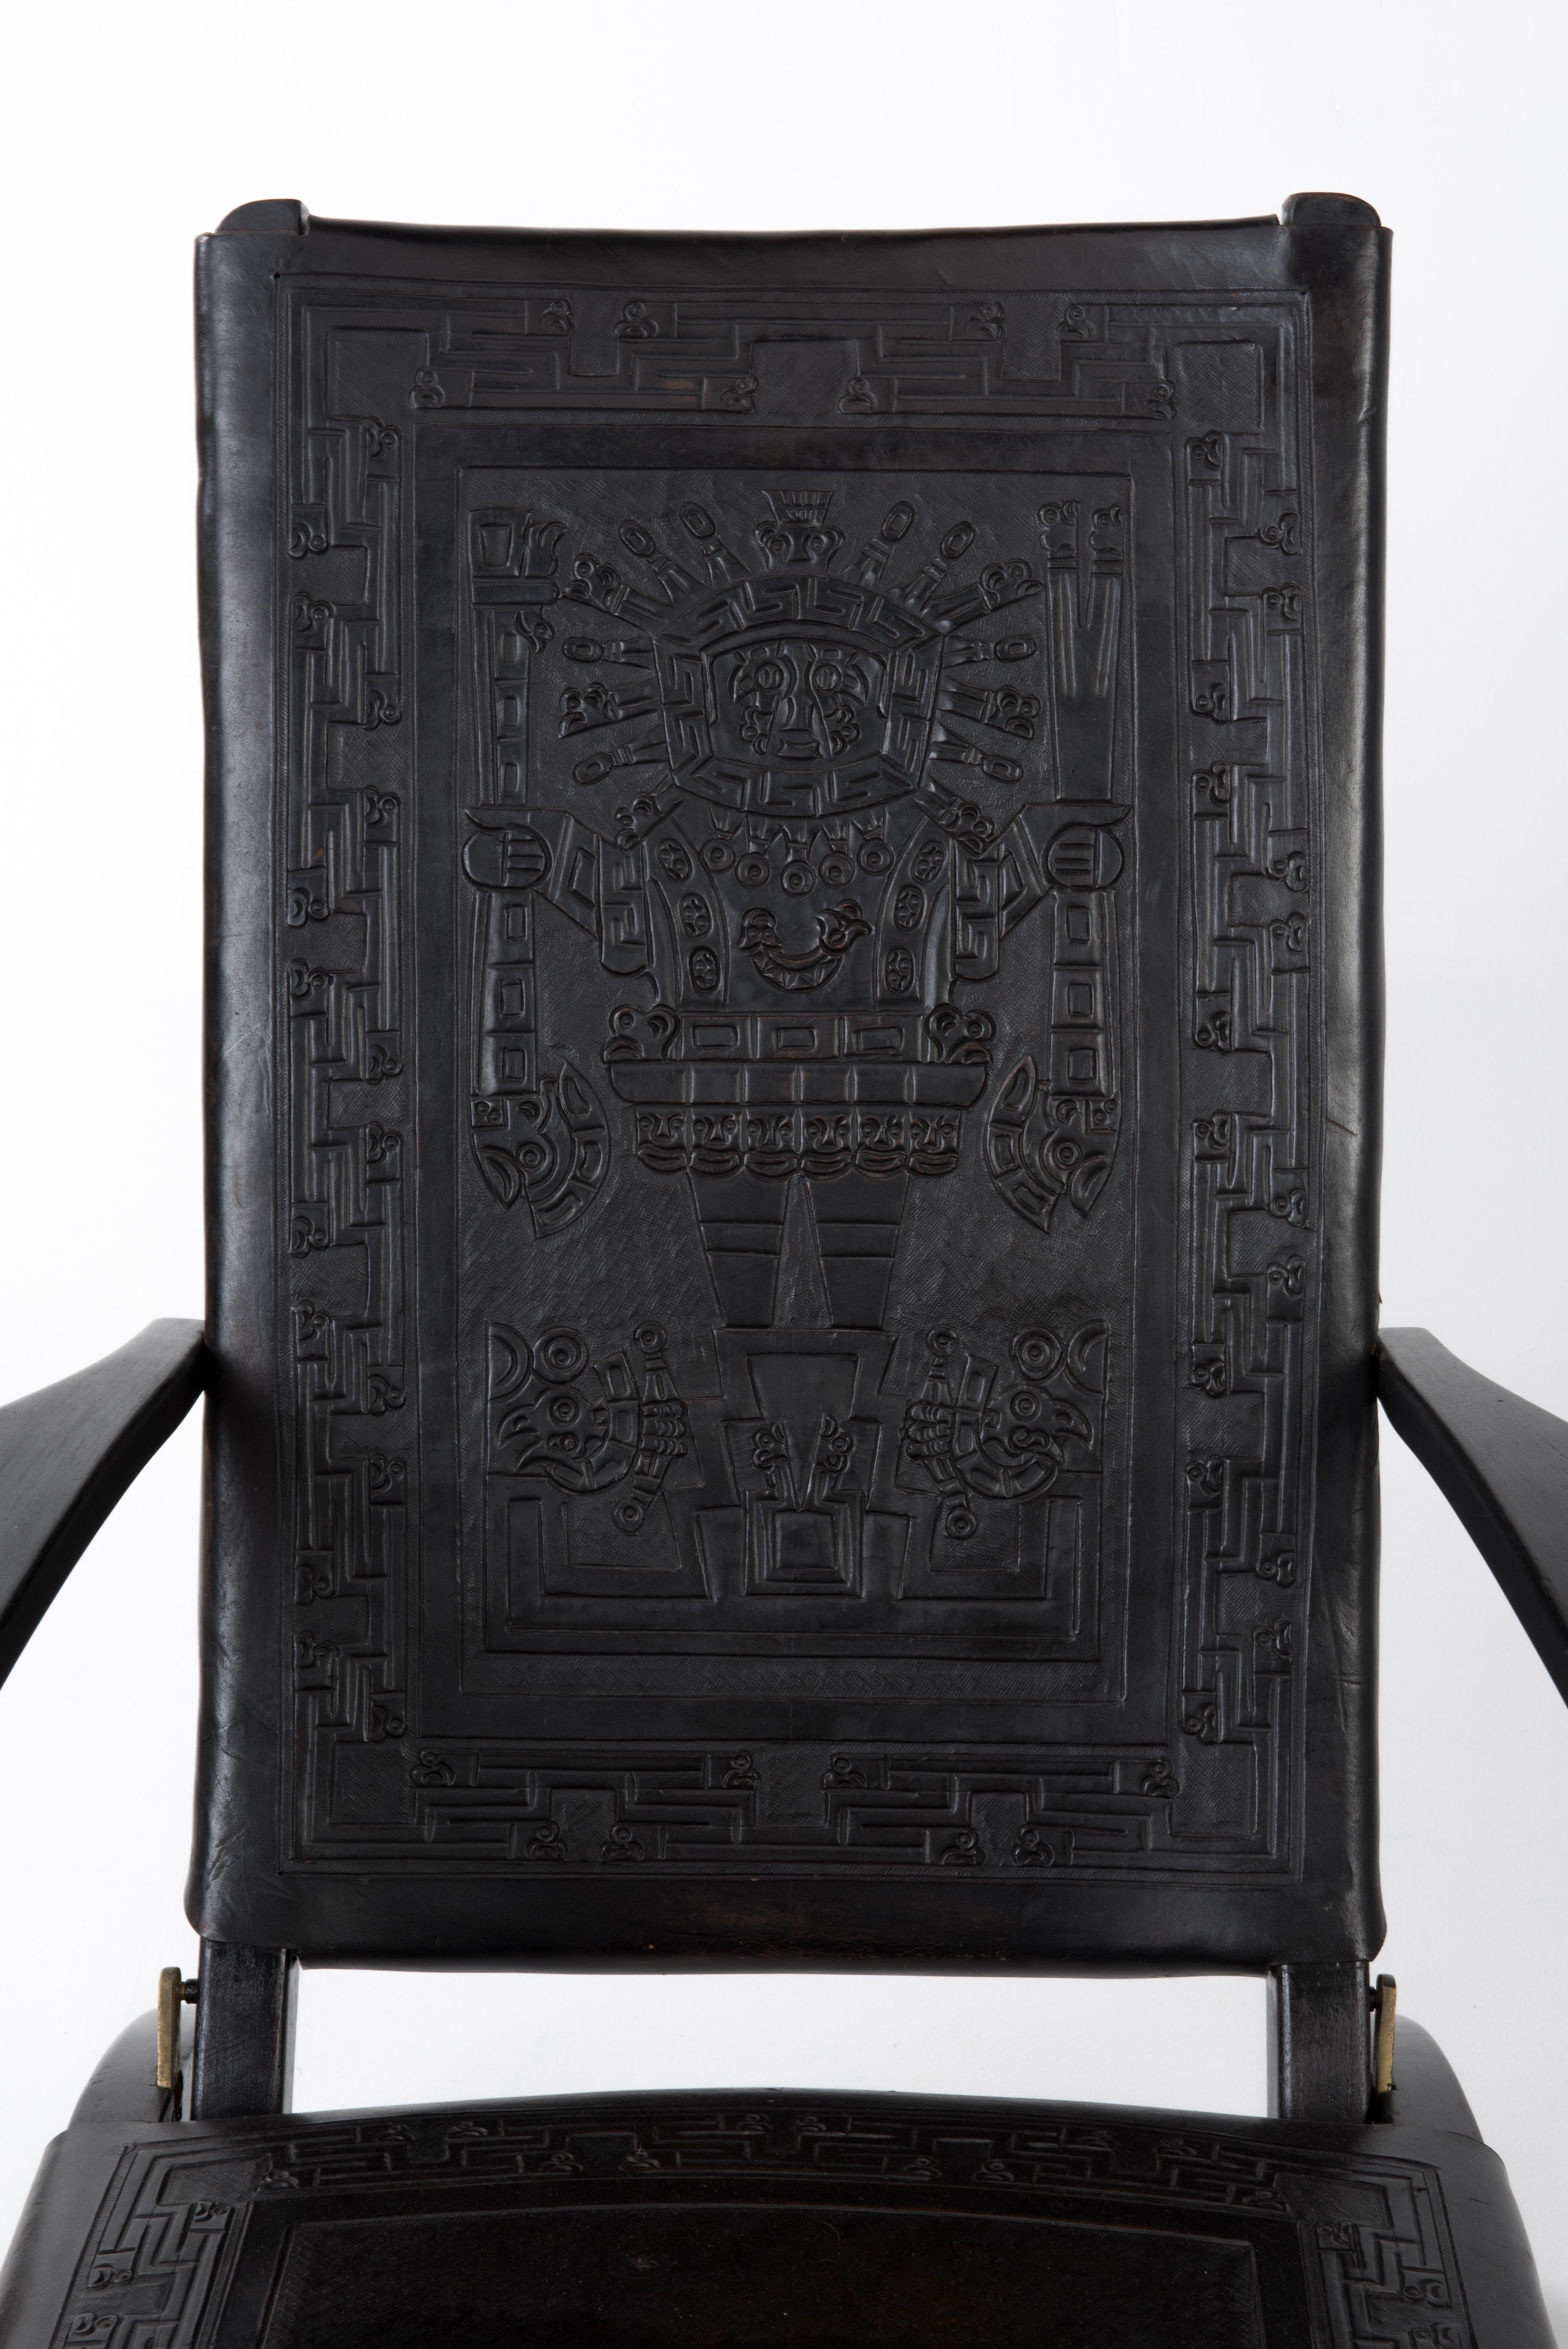 Ensemble rarissime de deux fauteuils pliants à dossier haut, de style moderne du milieu du siècle, conçus par Angel I. Pazmino dans les années 1970 pour Muebles de Estilo, en Équateur. Les chaises sont exécutées en bois et en cuir épais de selle